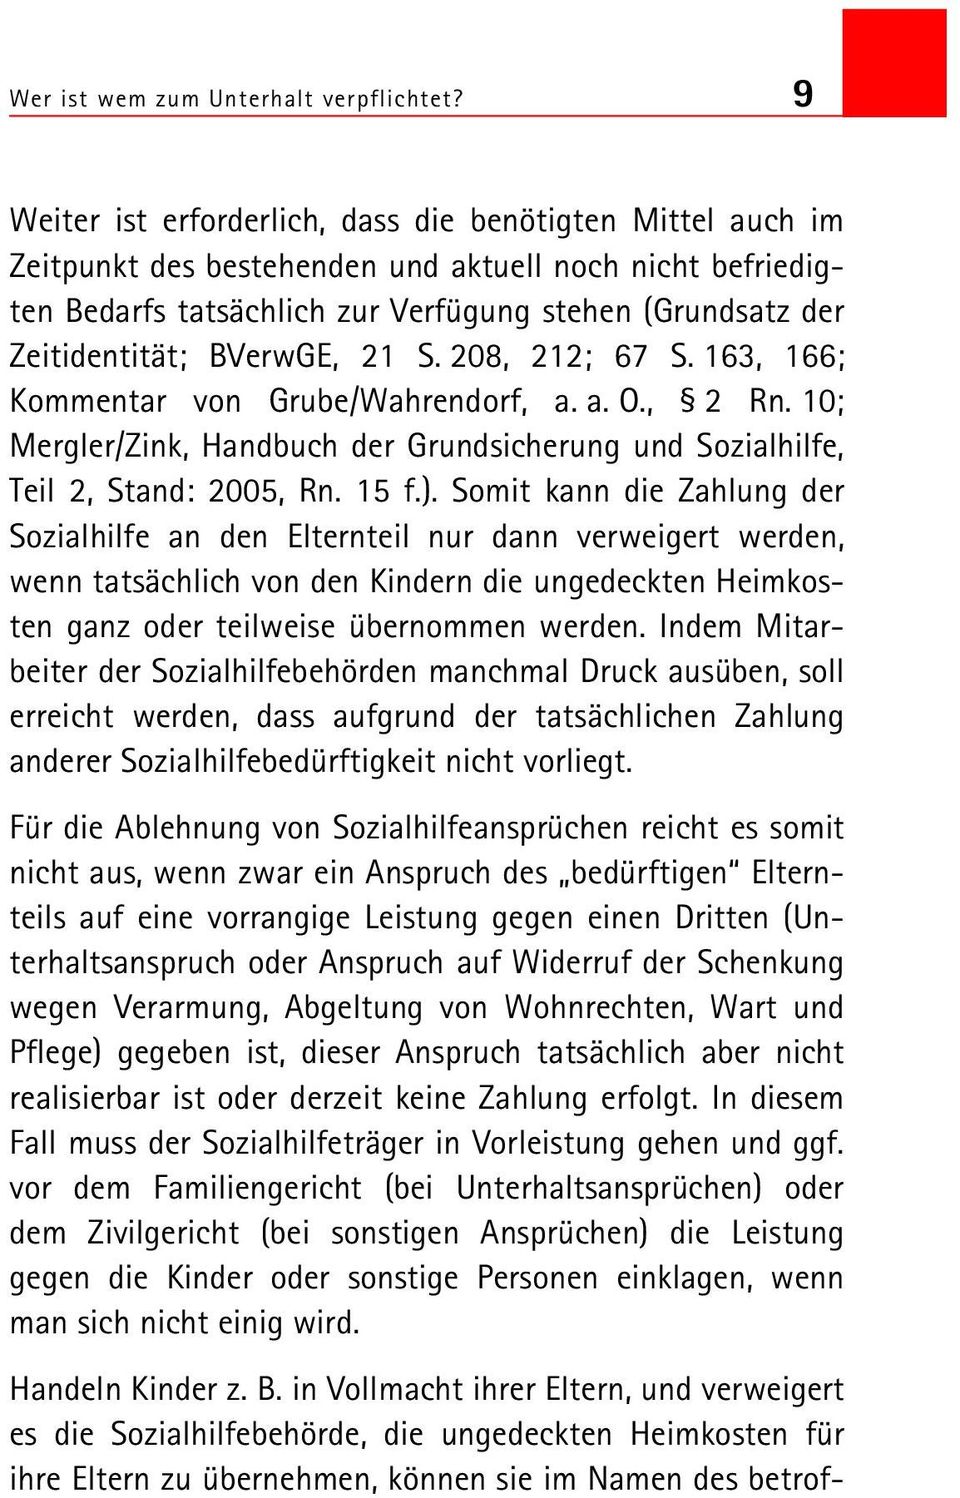 BVerwGE, 21 S. 208, 212; 67 S. 163, 166; Kommentar von Grube/Wahrendorf, a. a. O., 2 Rn. 10; Mergler/Zink, Handbuch der Grundsicherung und Sozialhilfe, Teil 2, Stand: 2005, Rn. 15 f.).